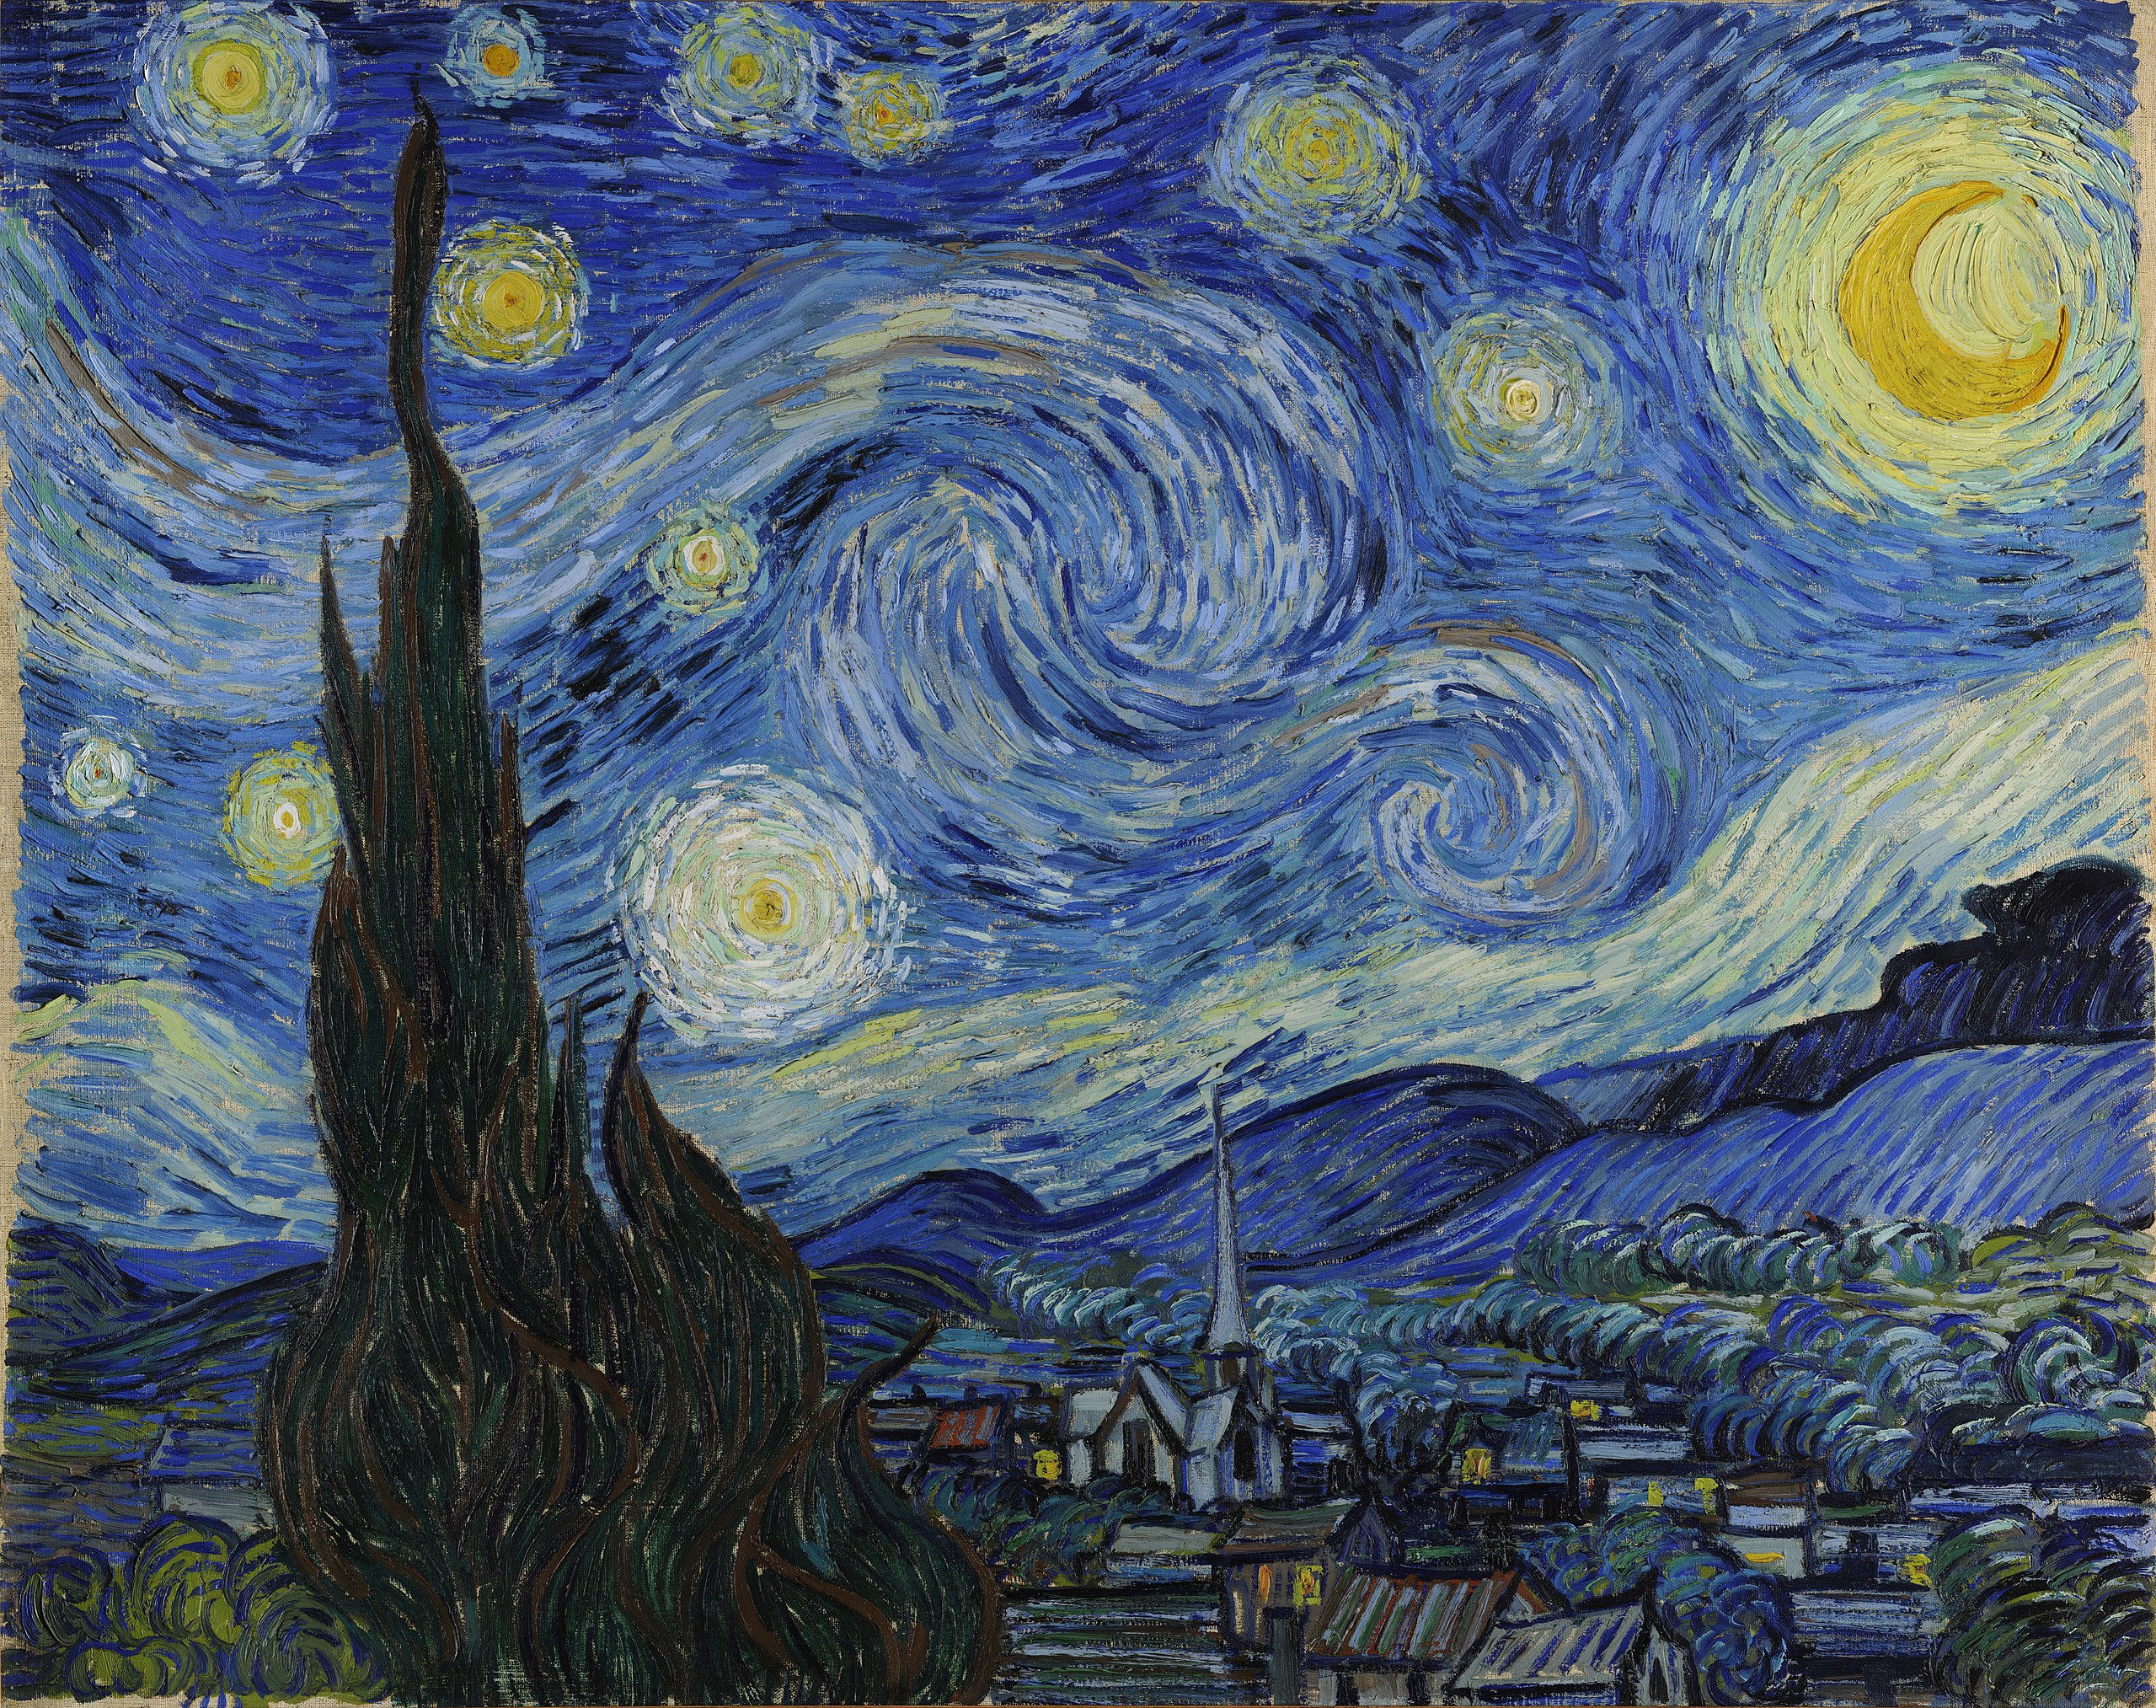 De sterrennacht by Vincent Van Gogh - 1889 - 73,7 x 92,1 cm 